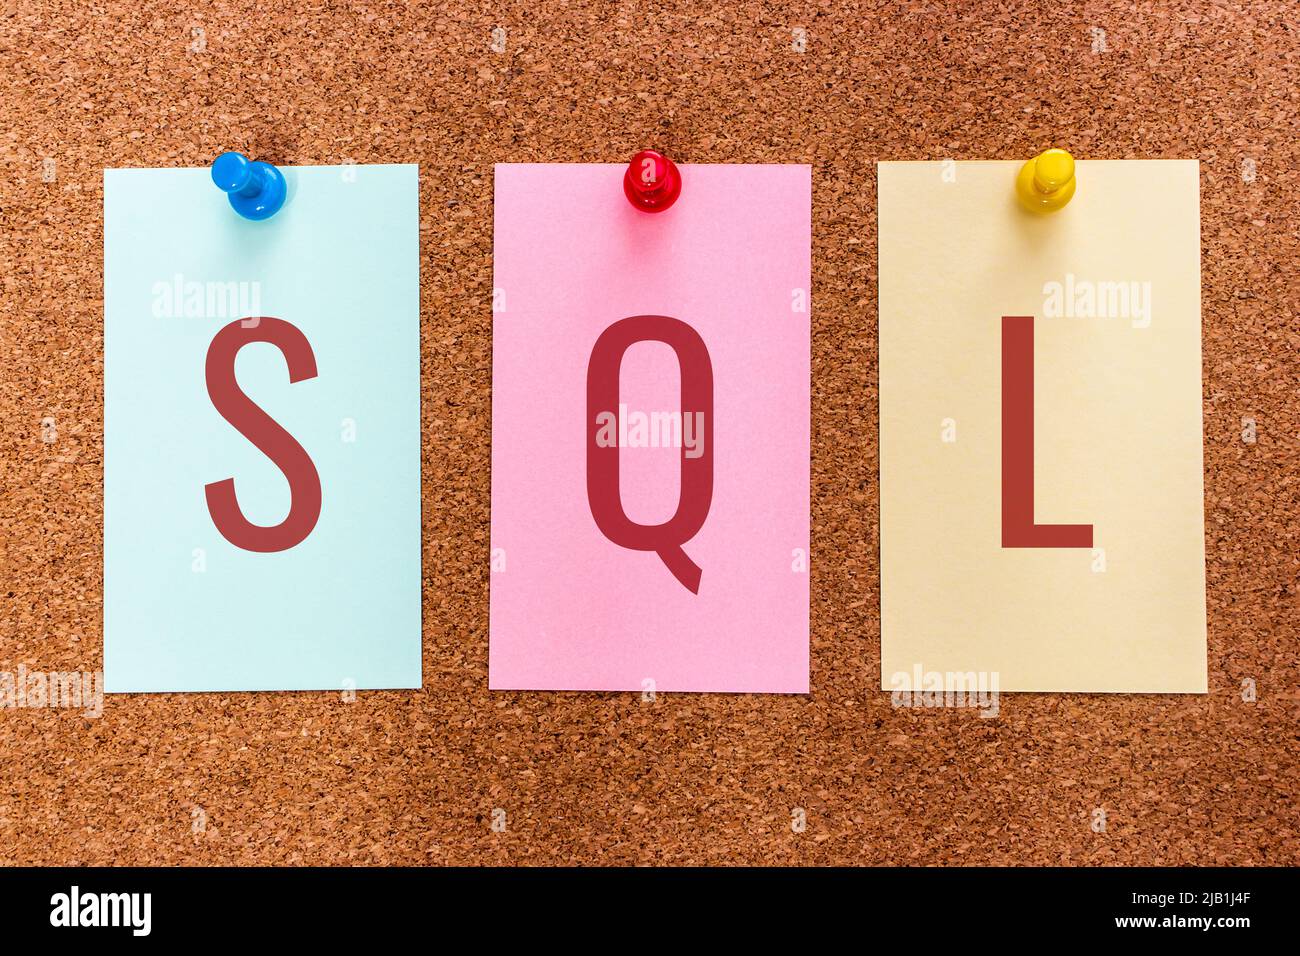 3 lettres mot-clé SQL (Structured Query Language, un langage spécifique au domaine dans la programmation) sur des autocollants de couleur. Données contenues dans un concept de SGBDR Banque D'Images